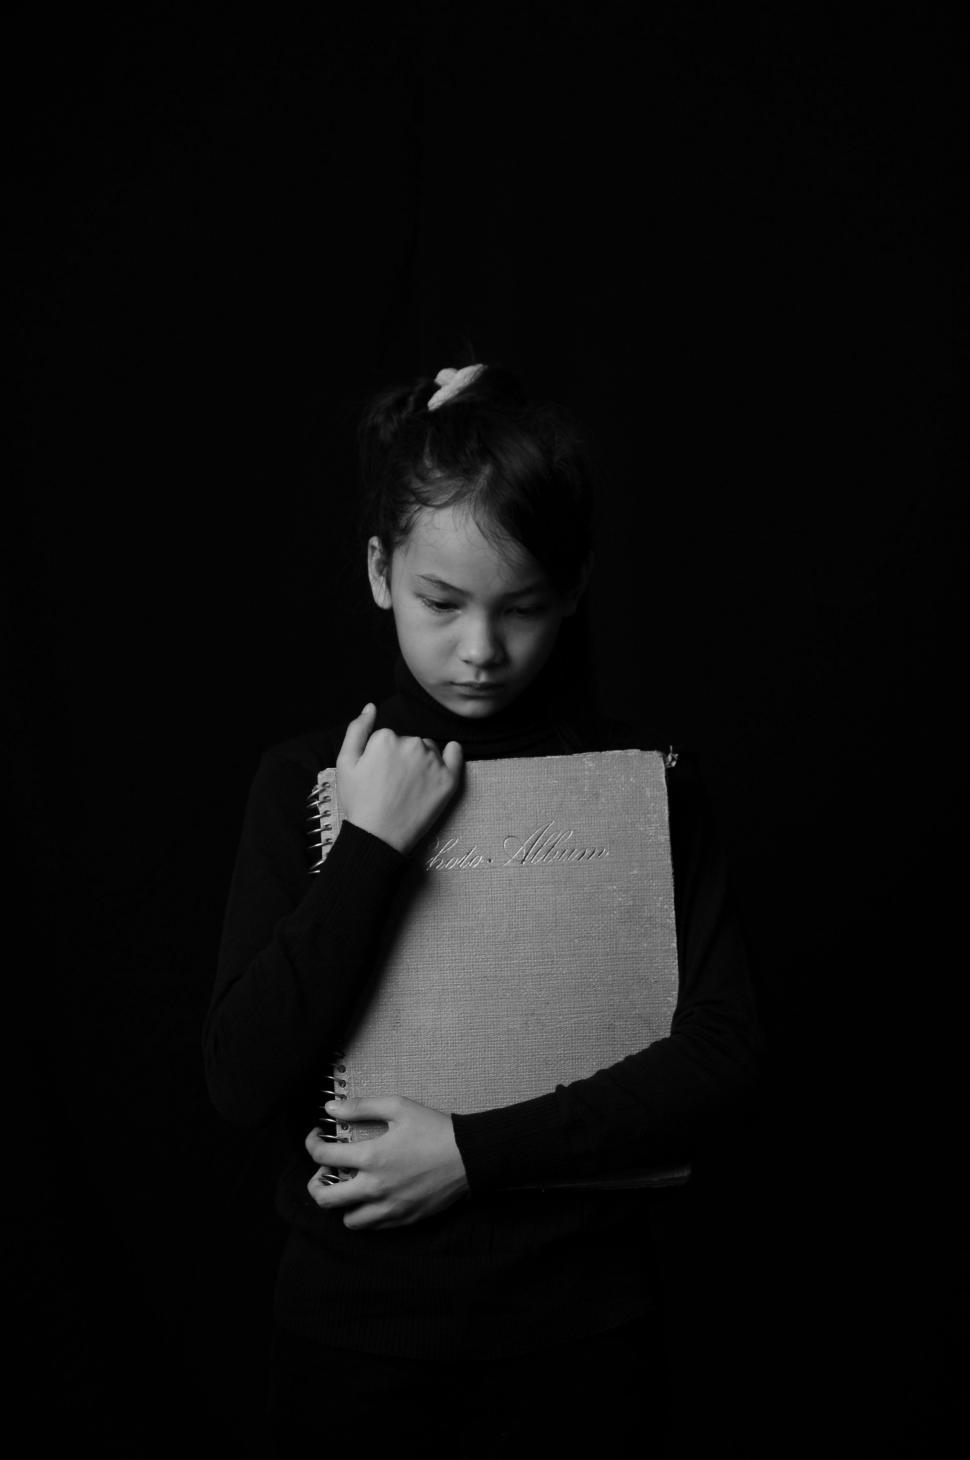 Free Image of Girl Child Hugging Photo Album on Black Background 